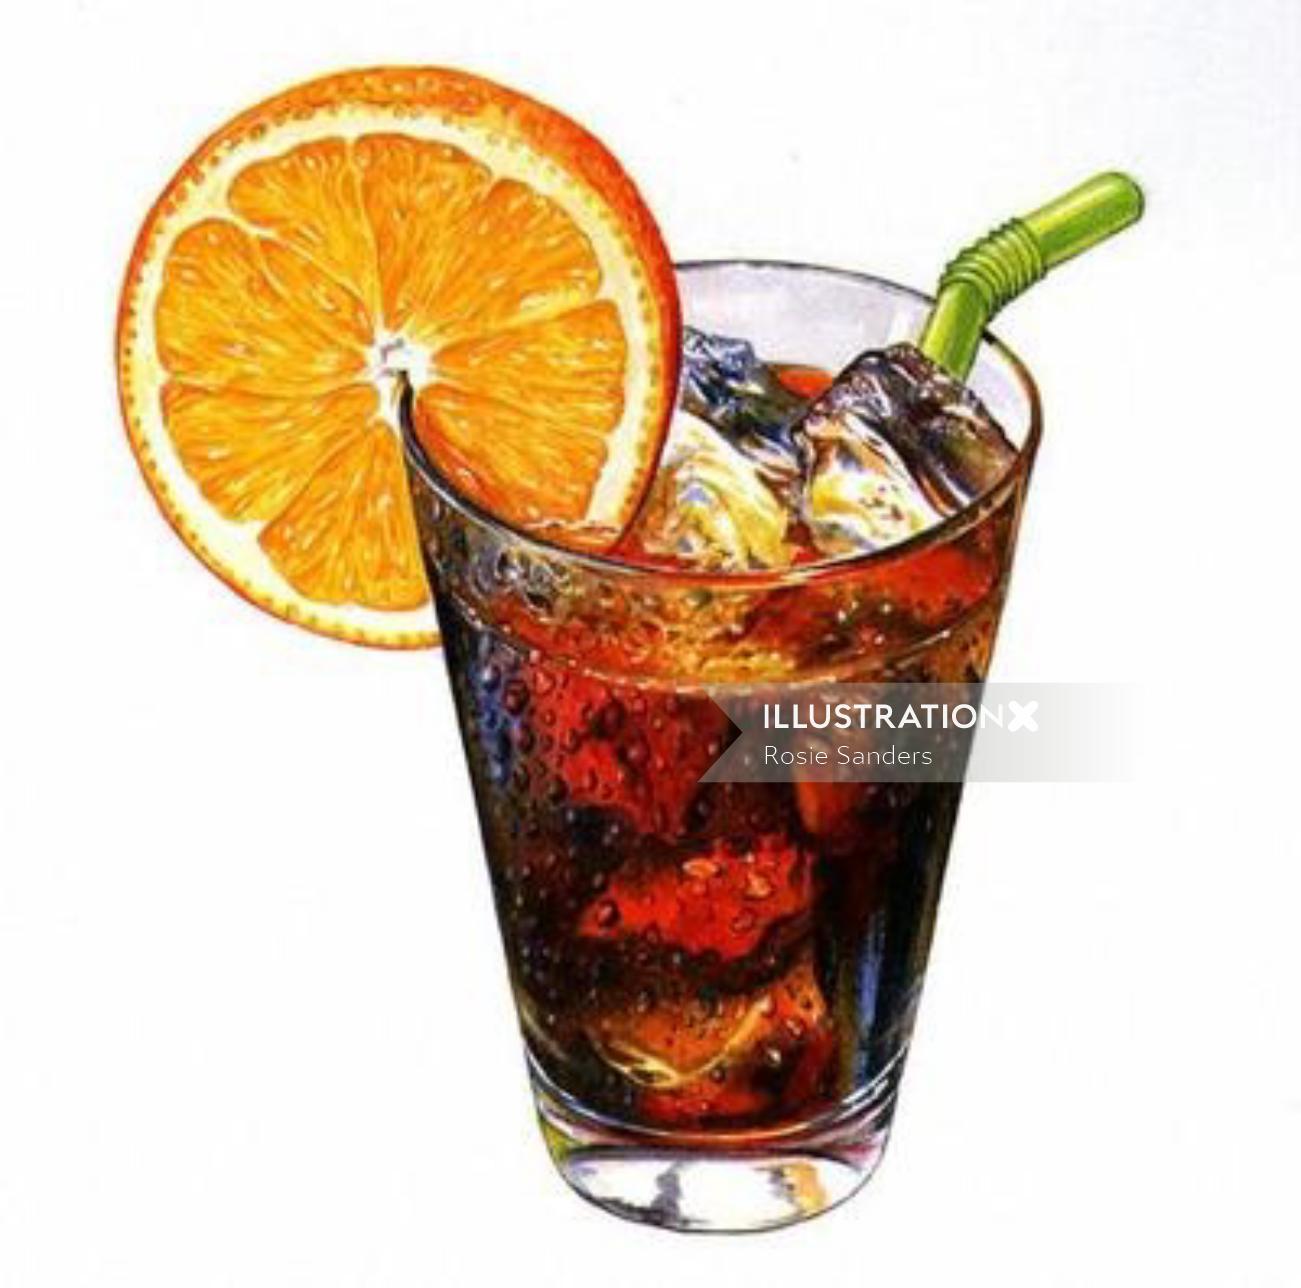 Illustration de boisson aux fruits par Rosie Sanders